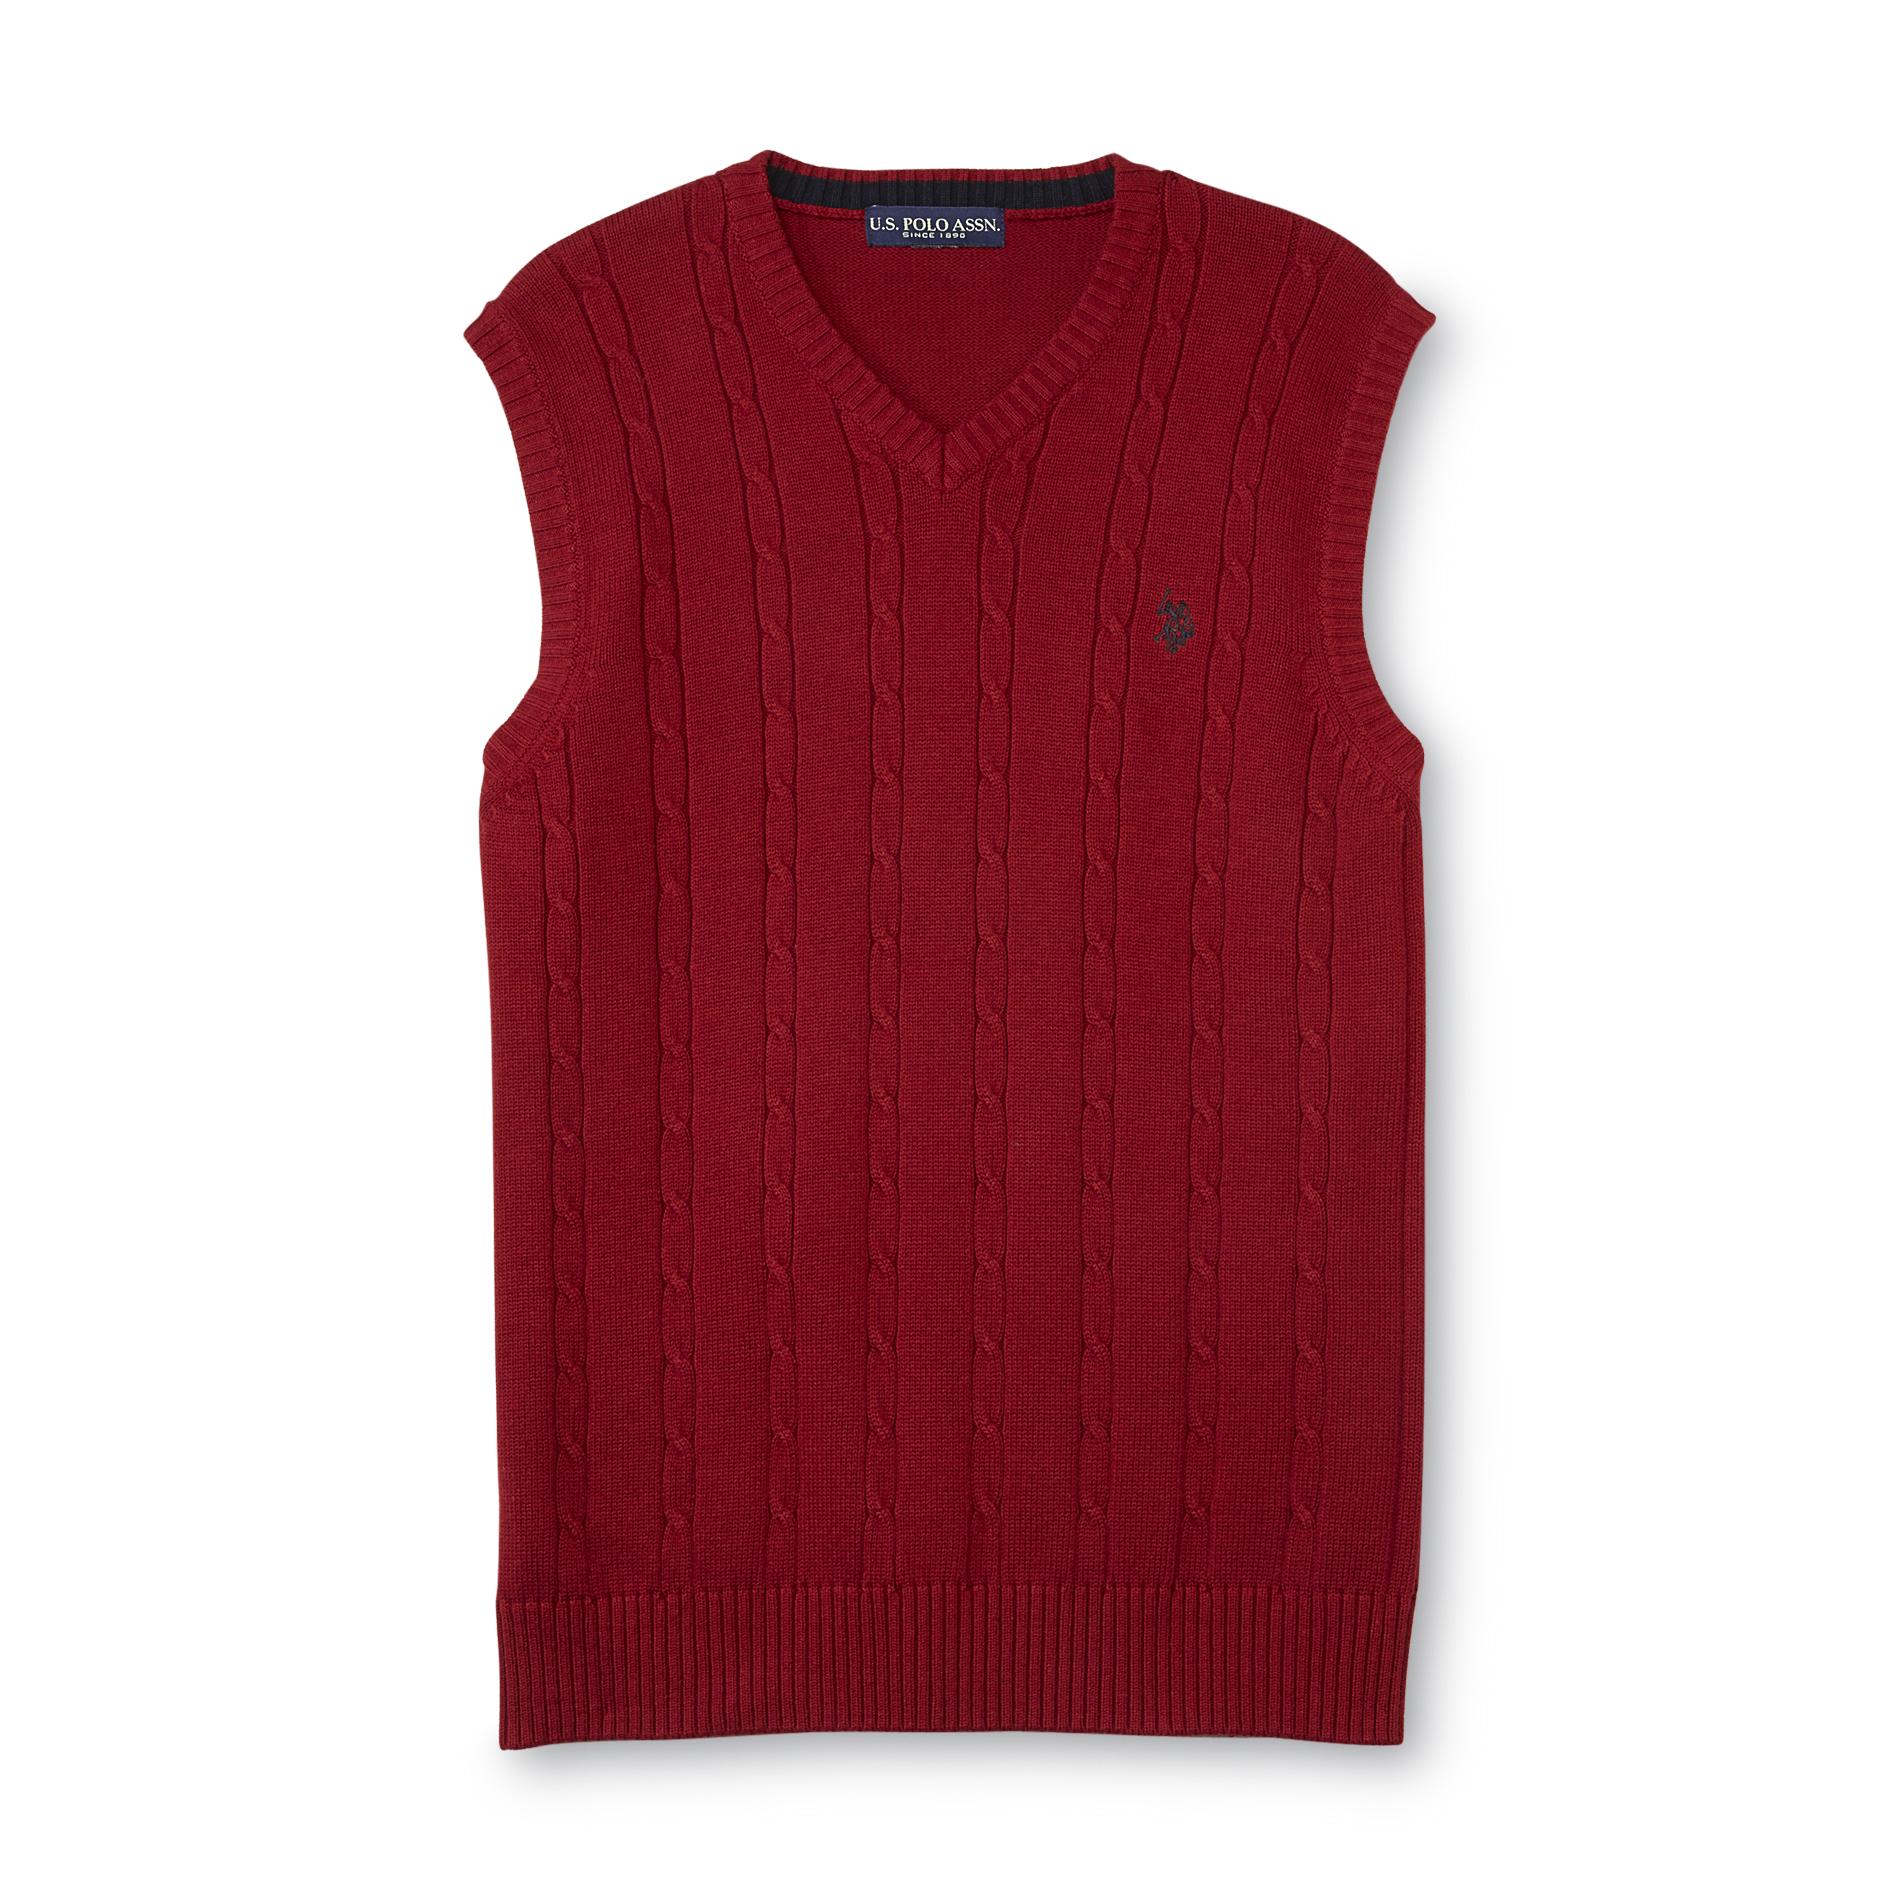 U.S. Polo Assn. Men's Knit Sweater Vest